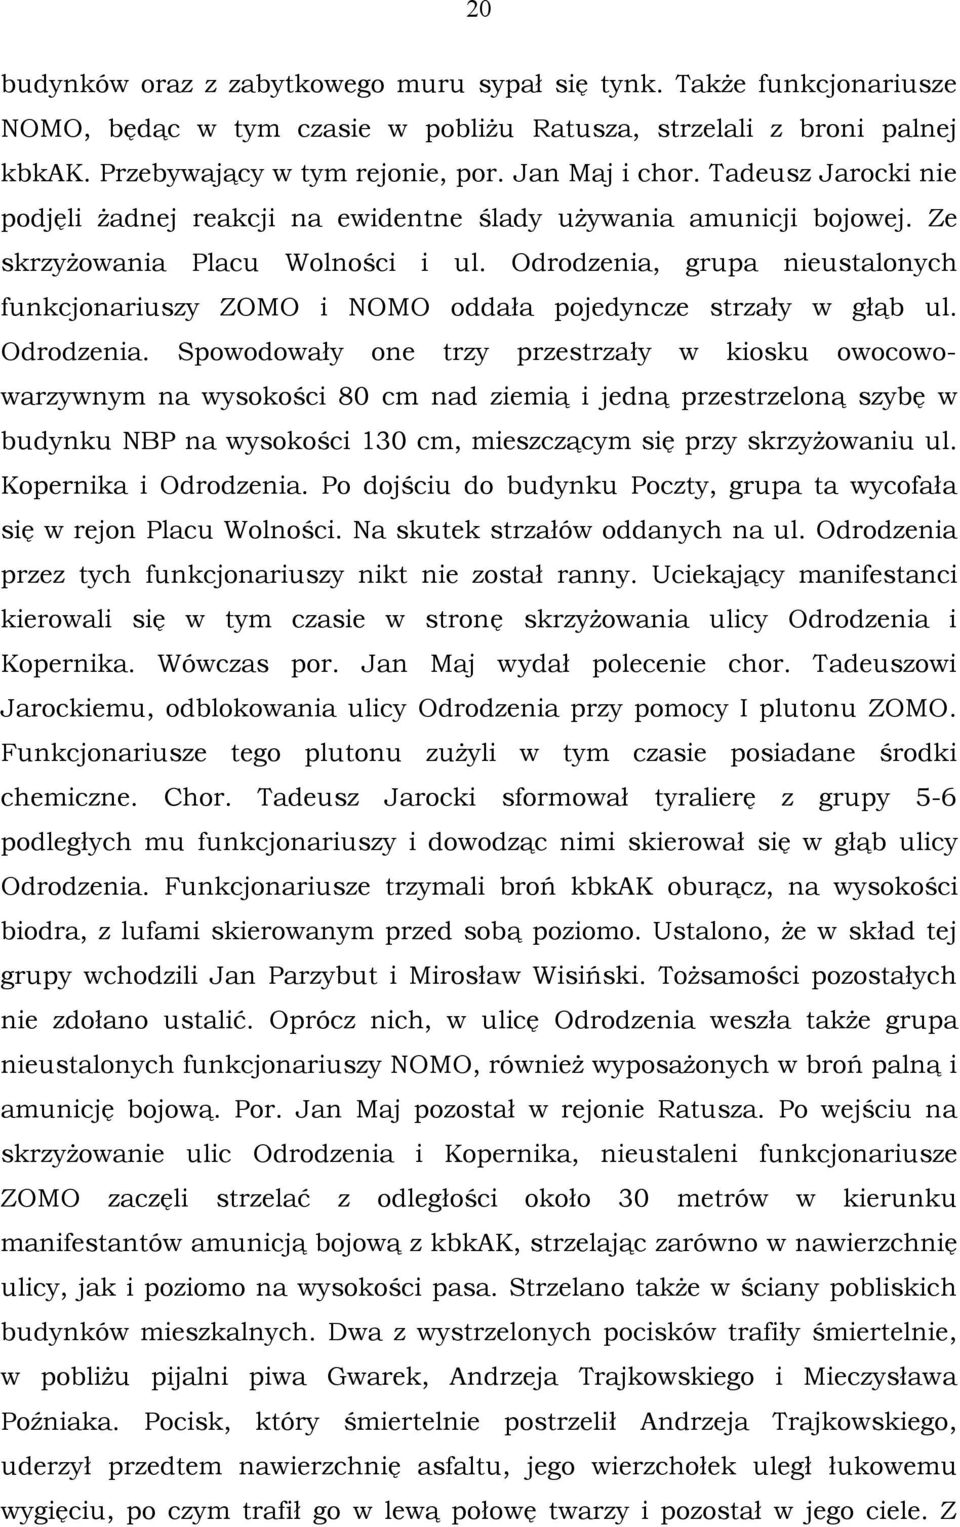 Odrodzenia, grupa nieustalonych funkcjonariuszy ZOMO i NOMO oddała pojedyncze strzały w głąb ul. Odrodzenia.